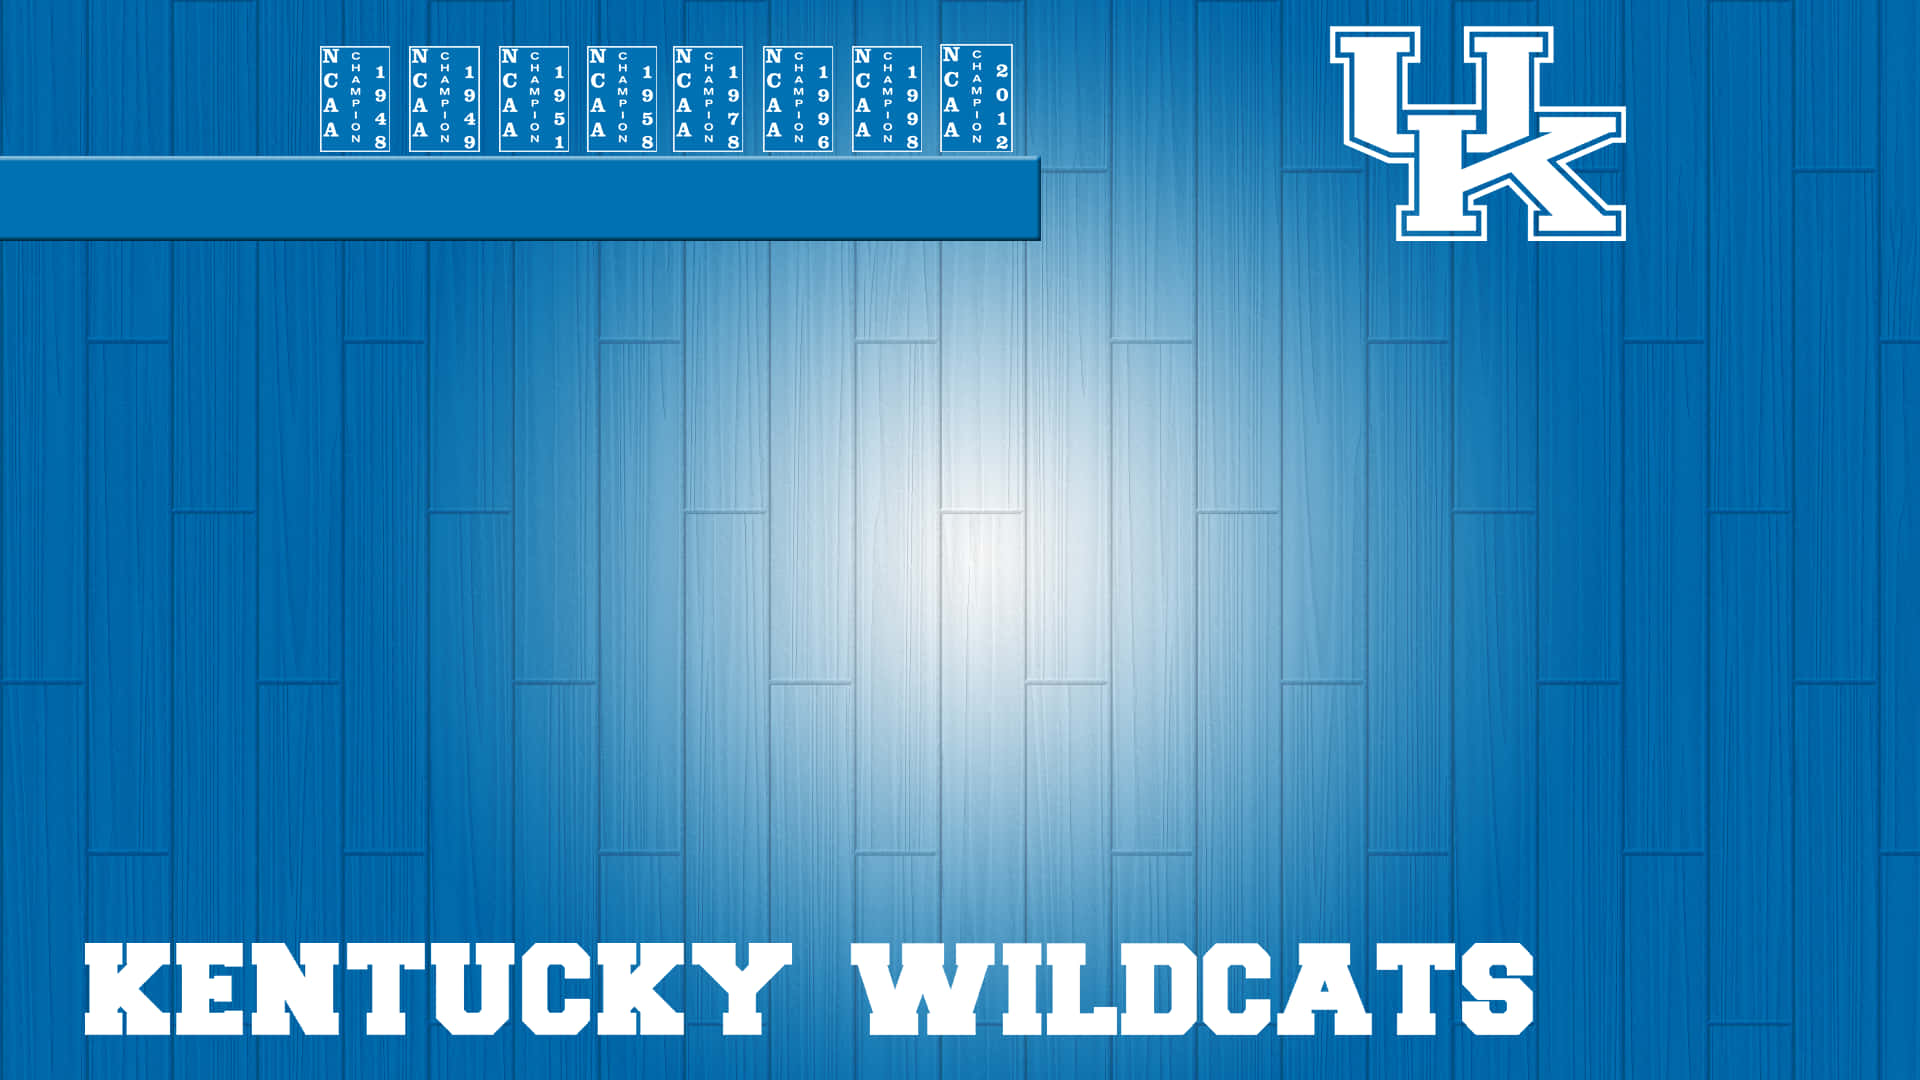 Fejr Wildcats - stoltheden og lidenskabeligheden fra Kentucky Basketball Wallpaper